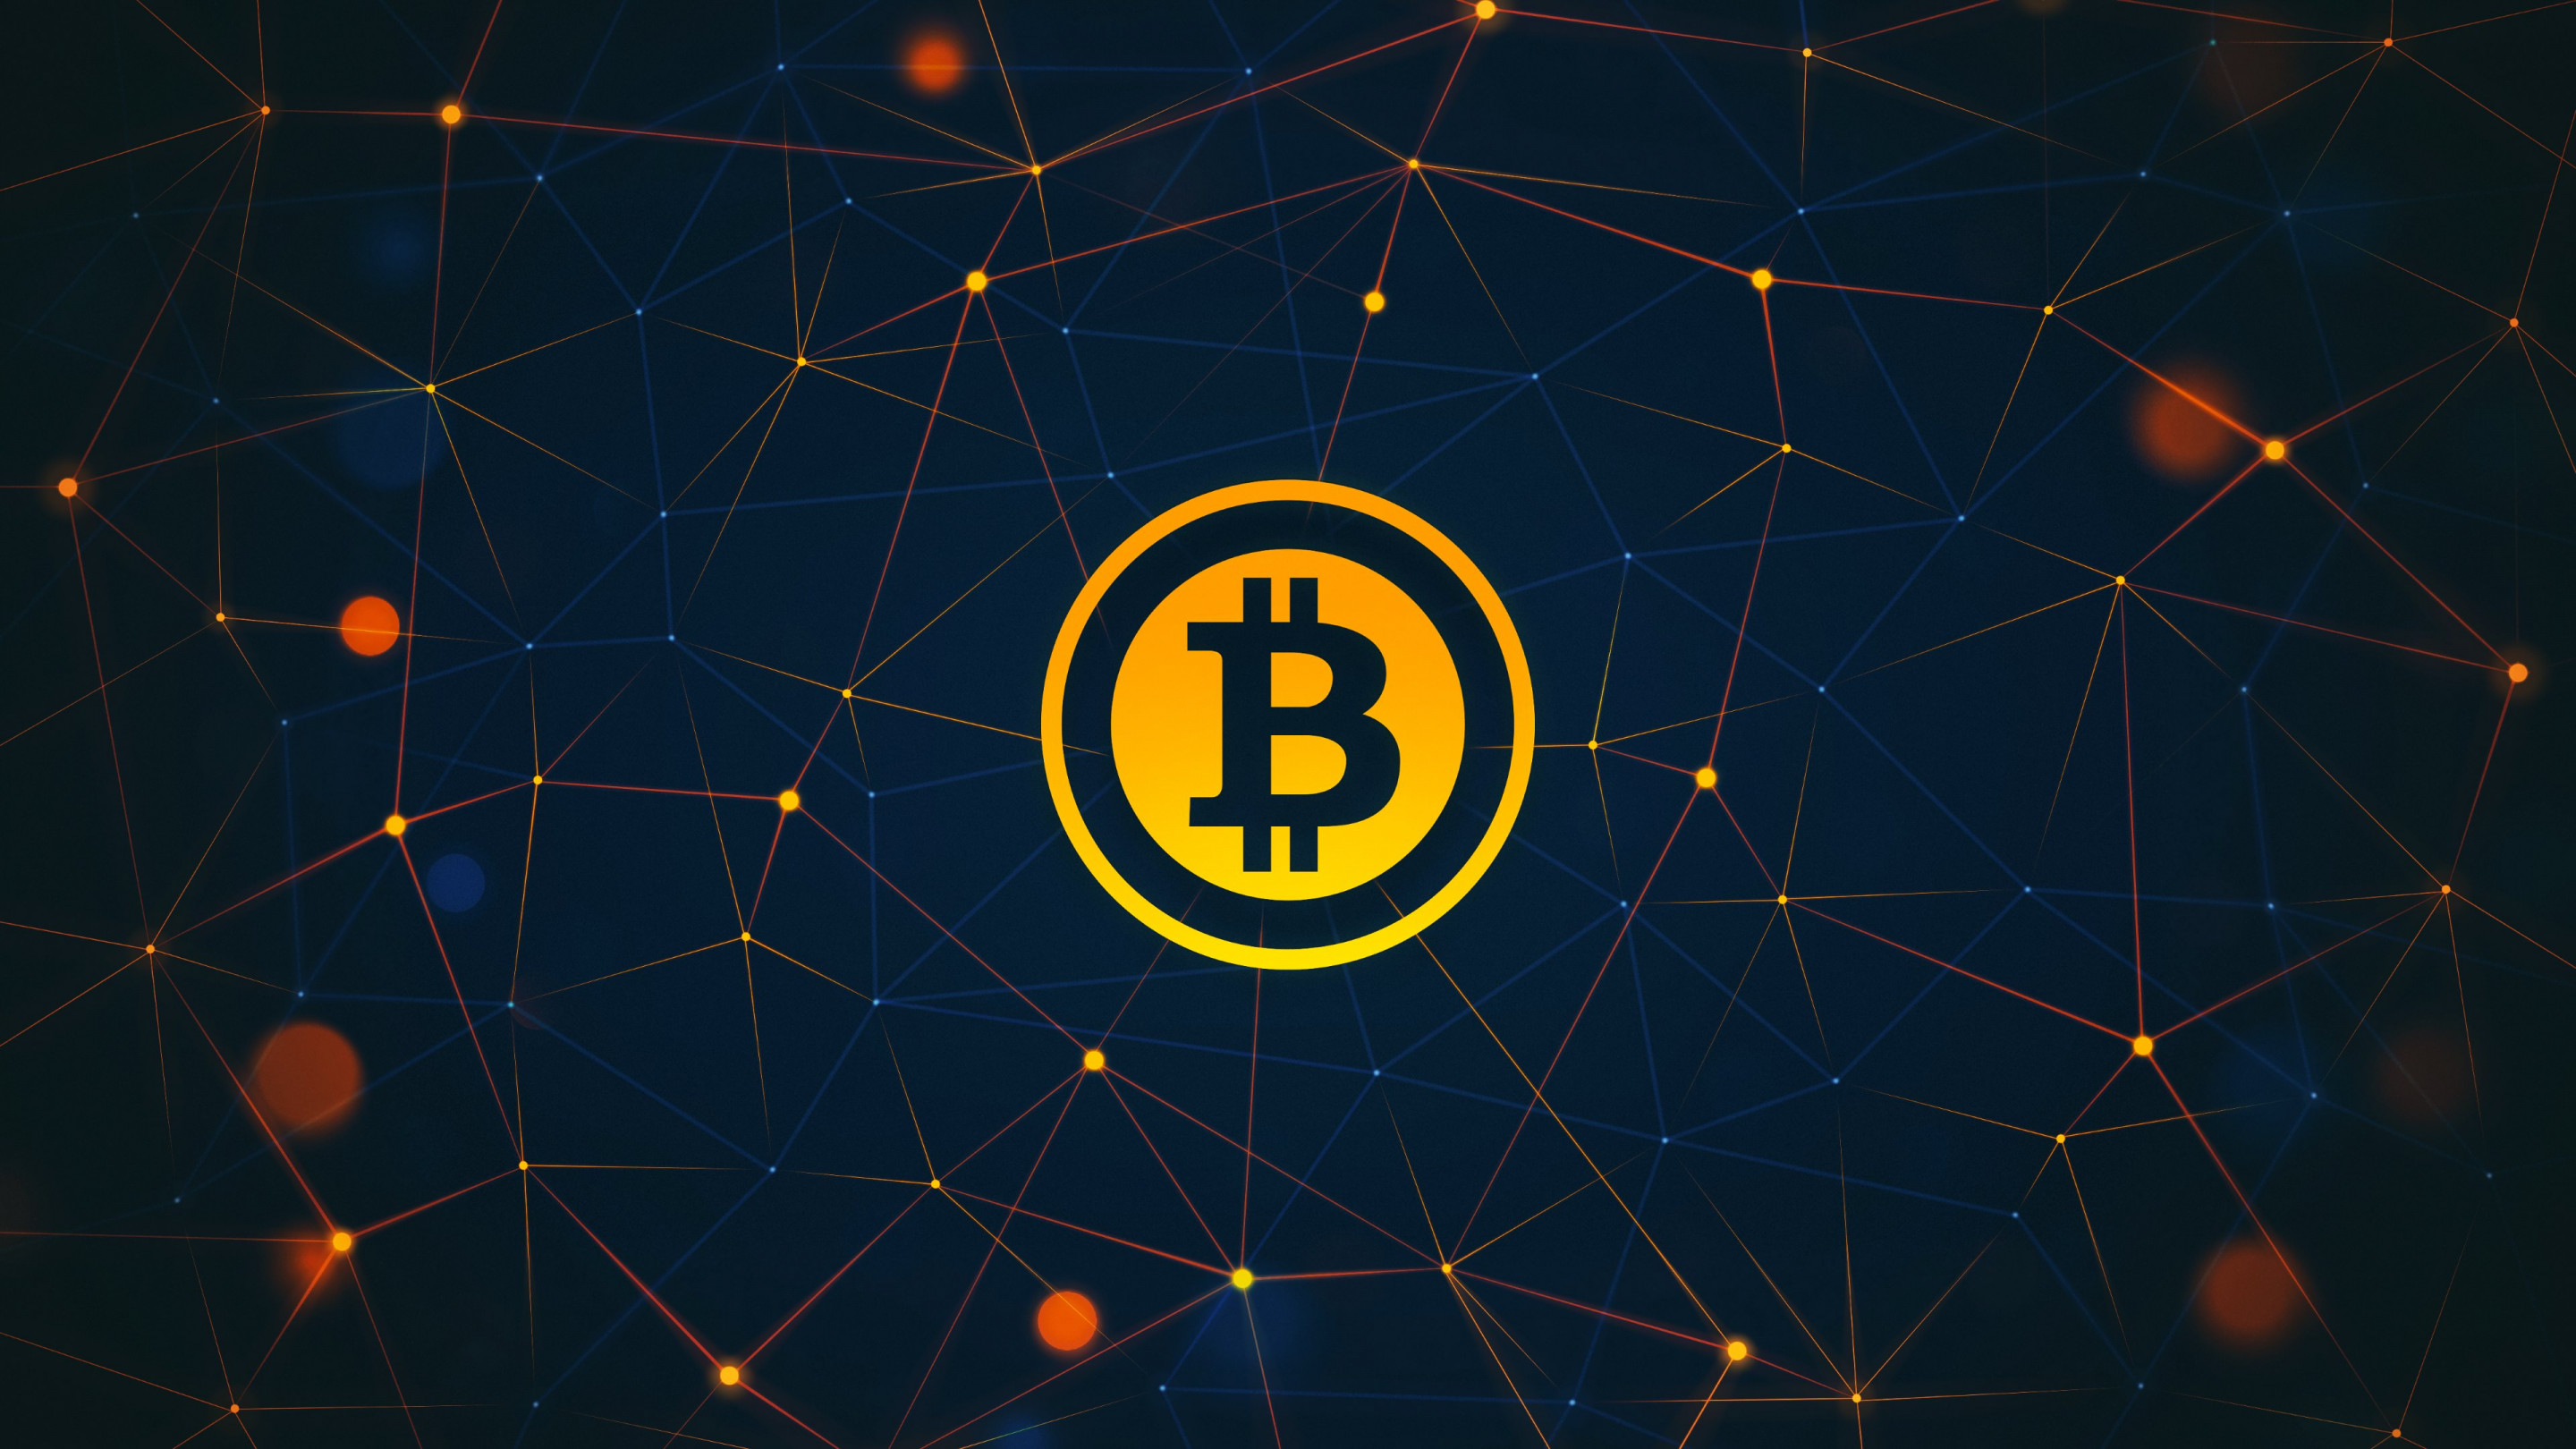 Bitcoin logo wallpaper 2880x1620